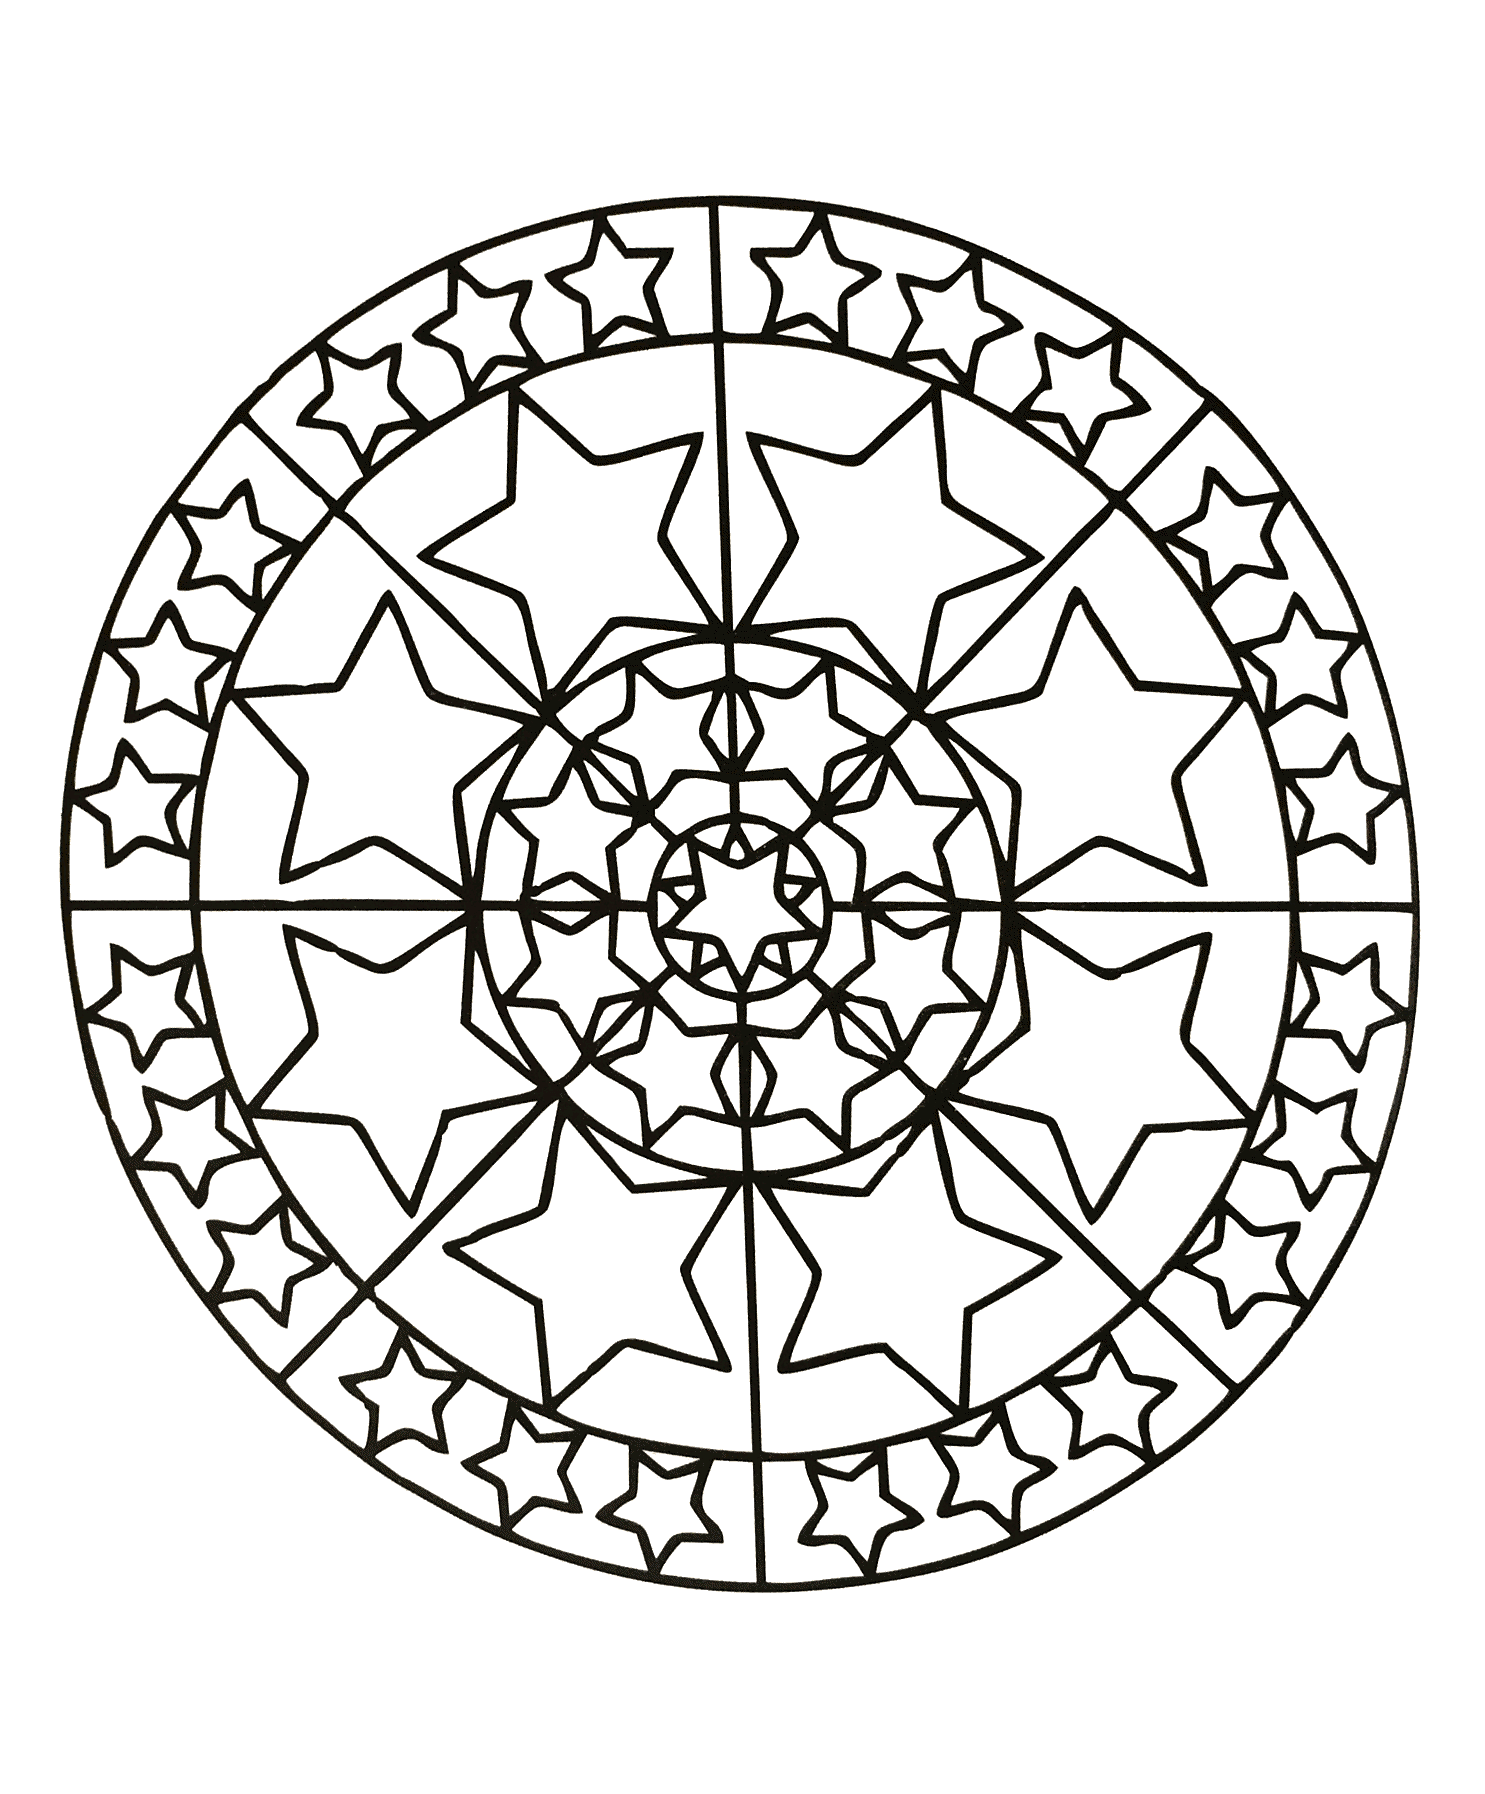 Préparez vos feutres et crayons pour réaliser la mise en couleur de ce Mandala plein de petits détails et zones intriquées.